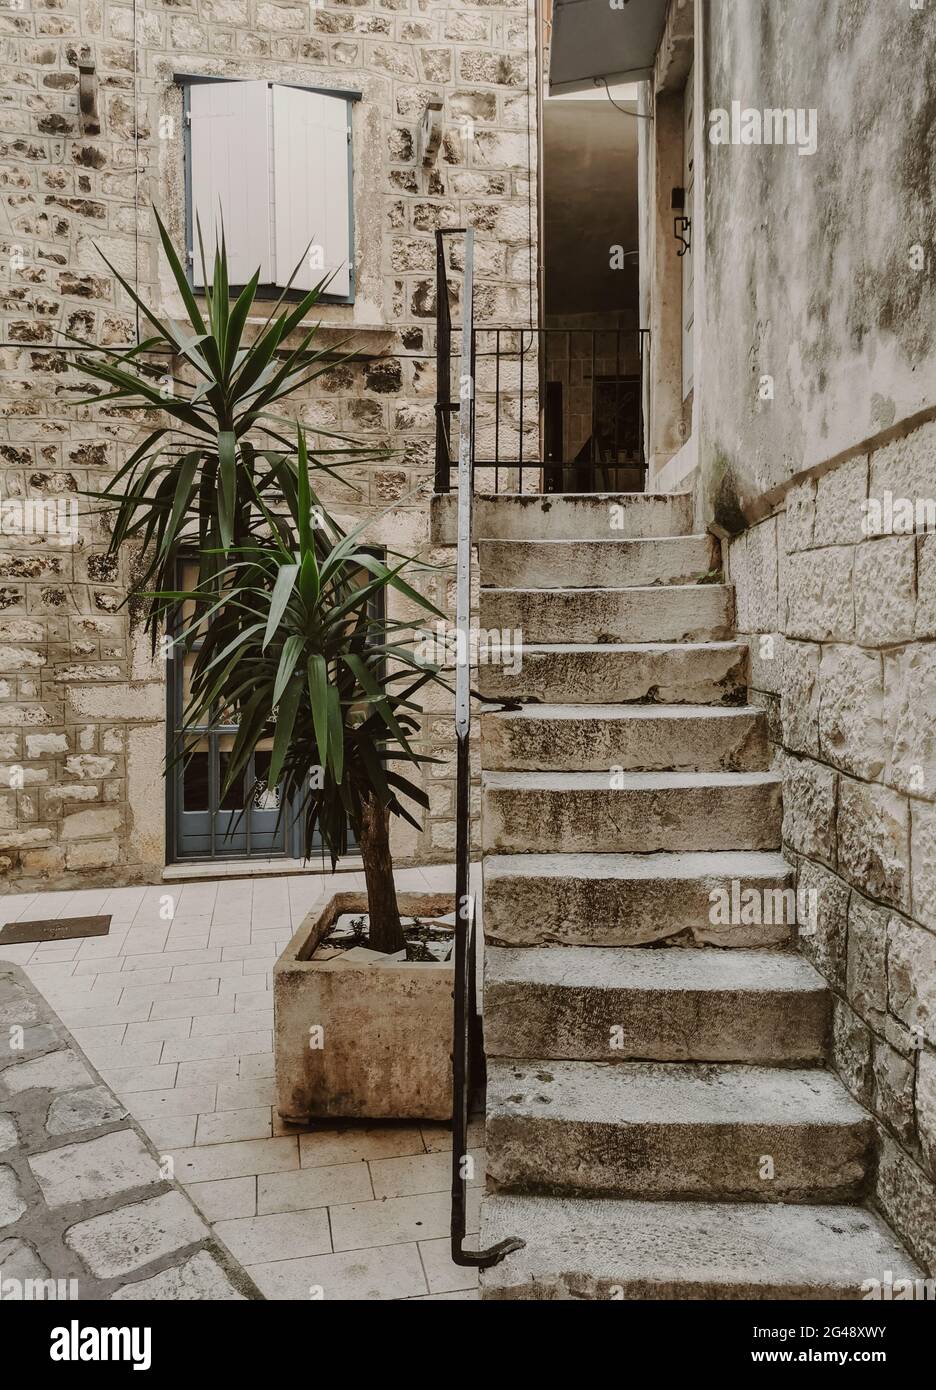 una taircase che porta alla porta d'ingresso della vecchia casa in pietra in una strada idilliaca della città vecchia. Foto Stock